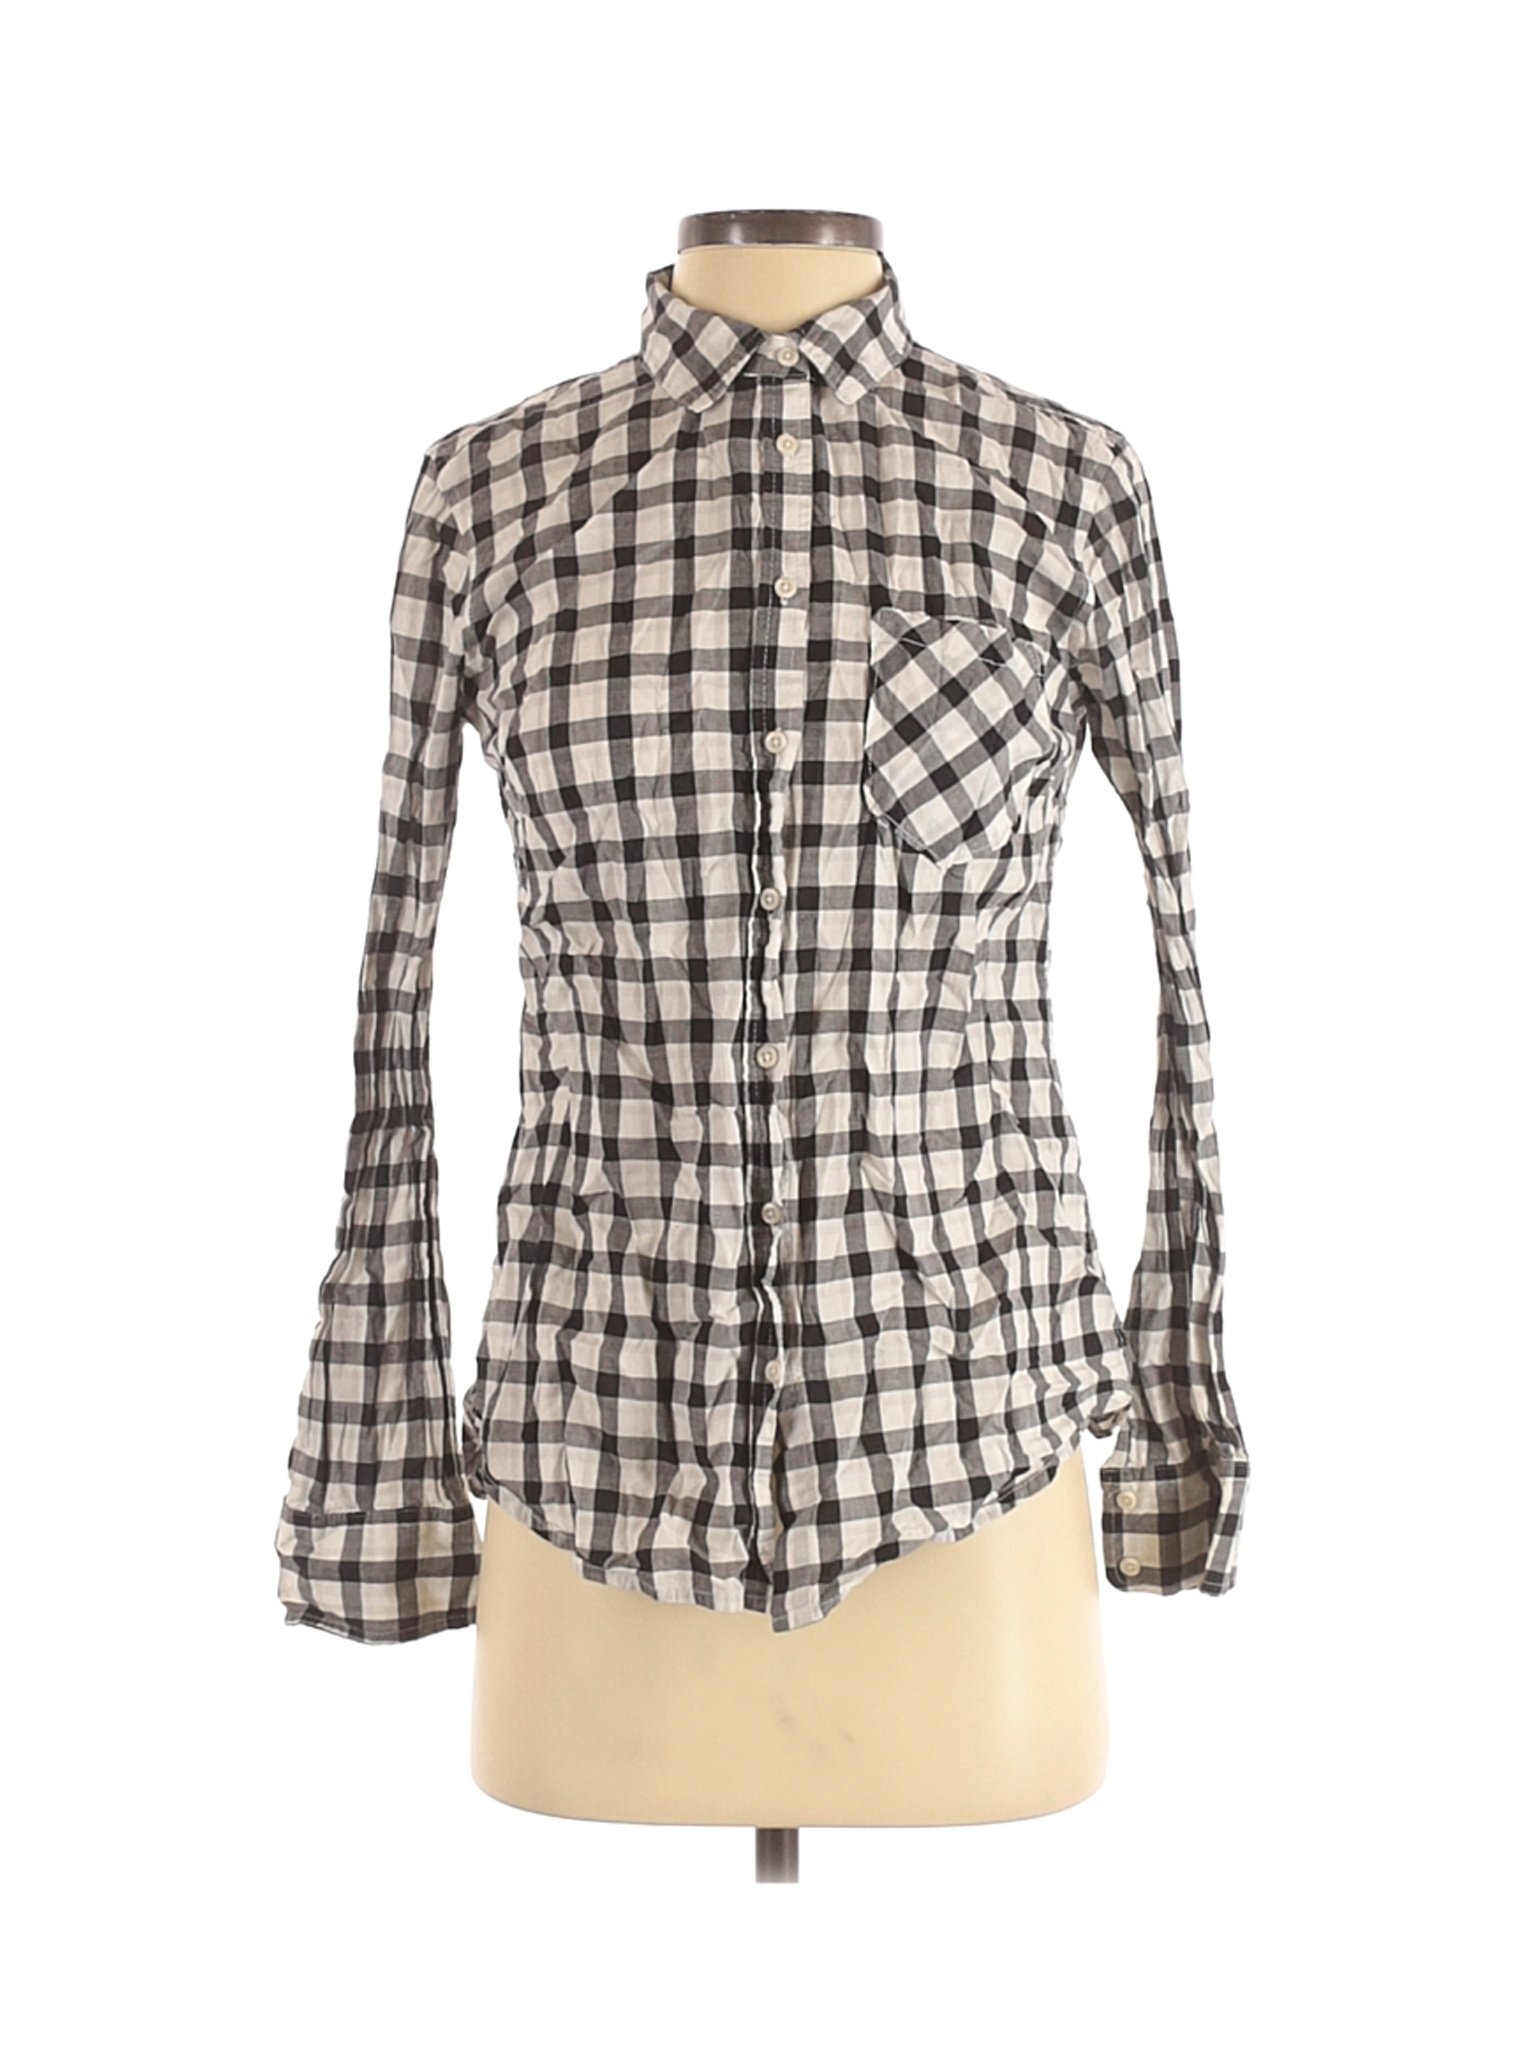 Merona Women White Long Sleeve Button-Down Shirt S | eBay